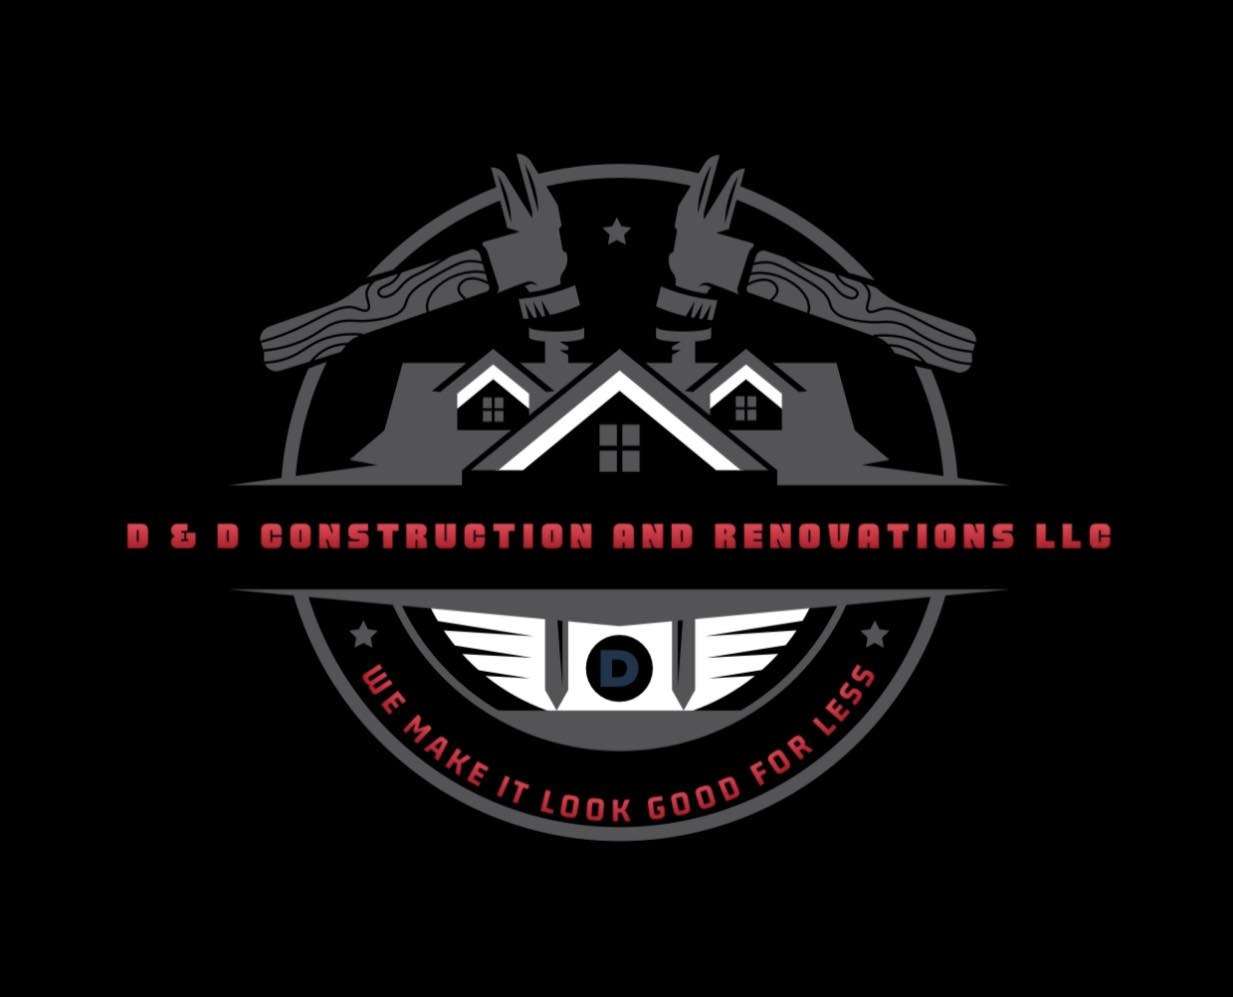 D & D Construction and Renovation LLC Logo